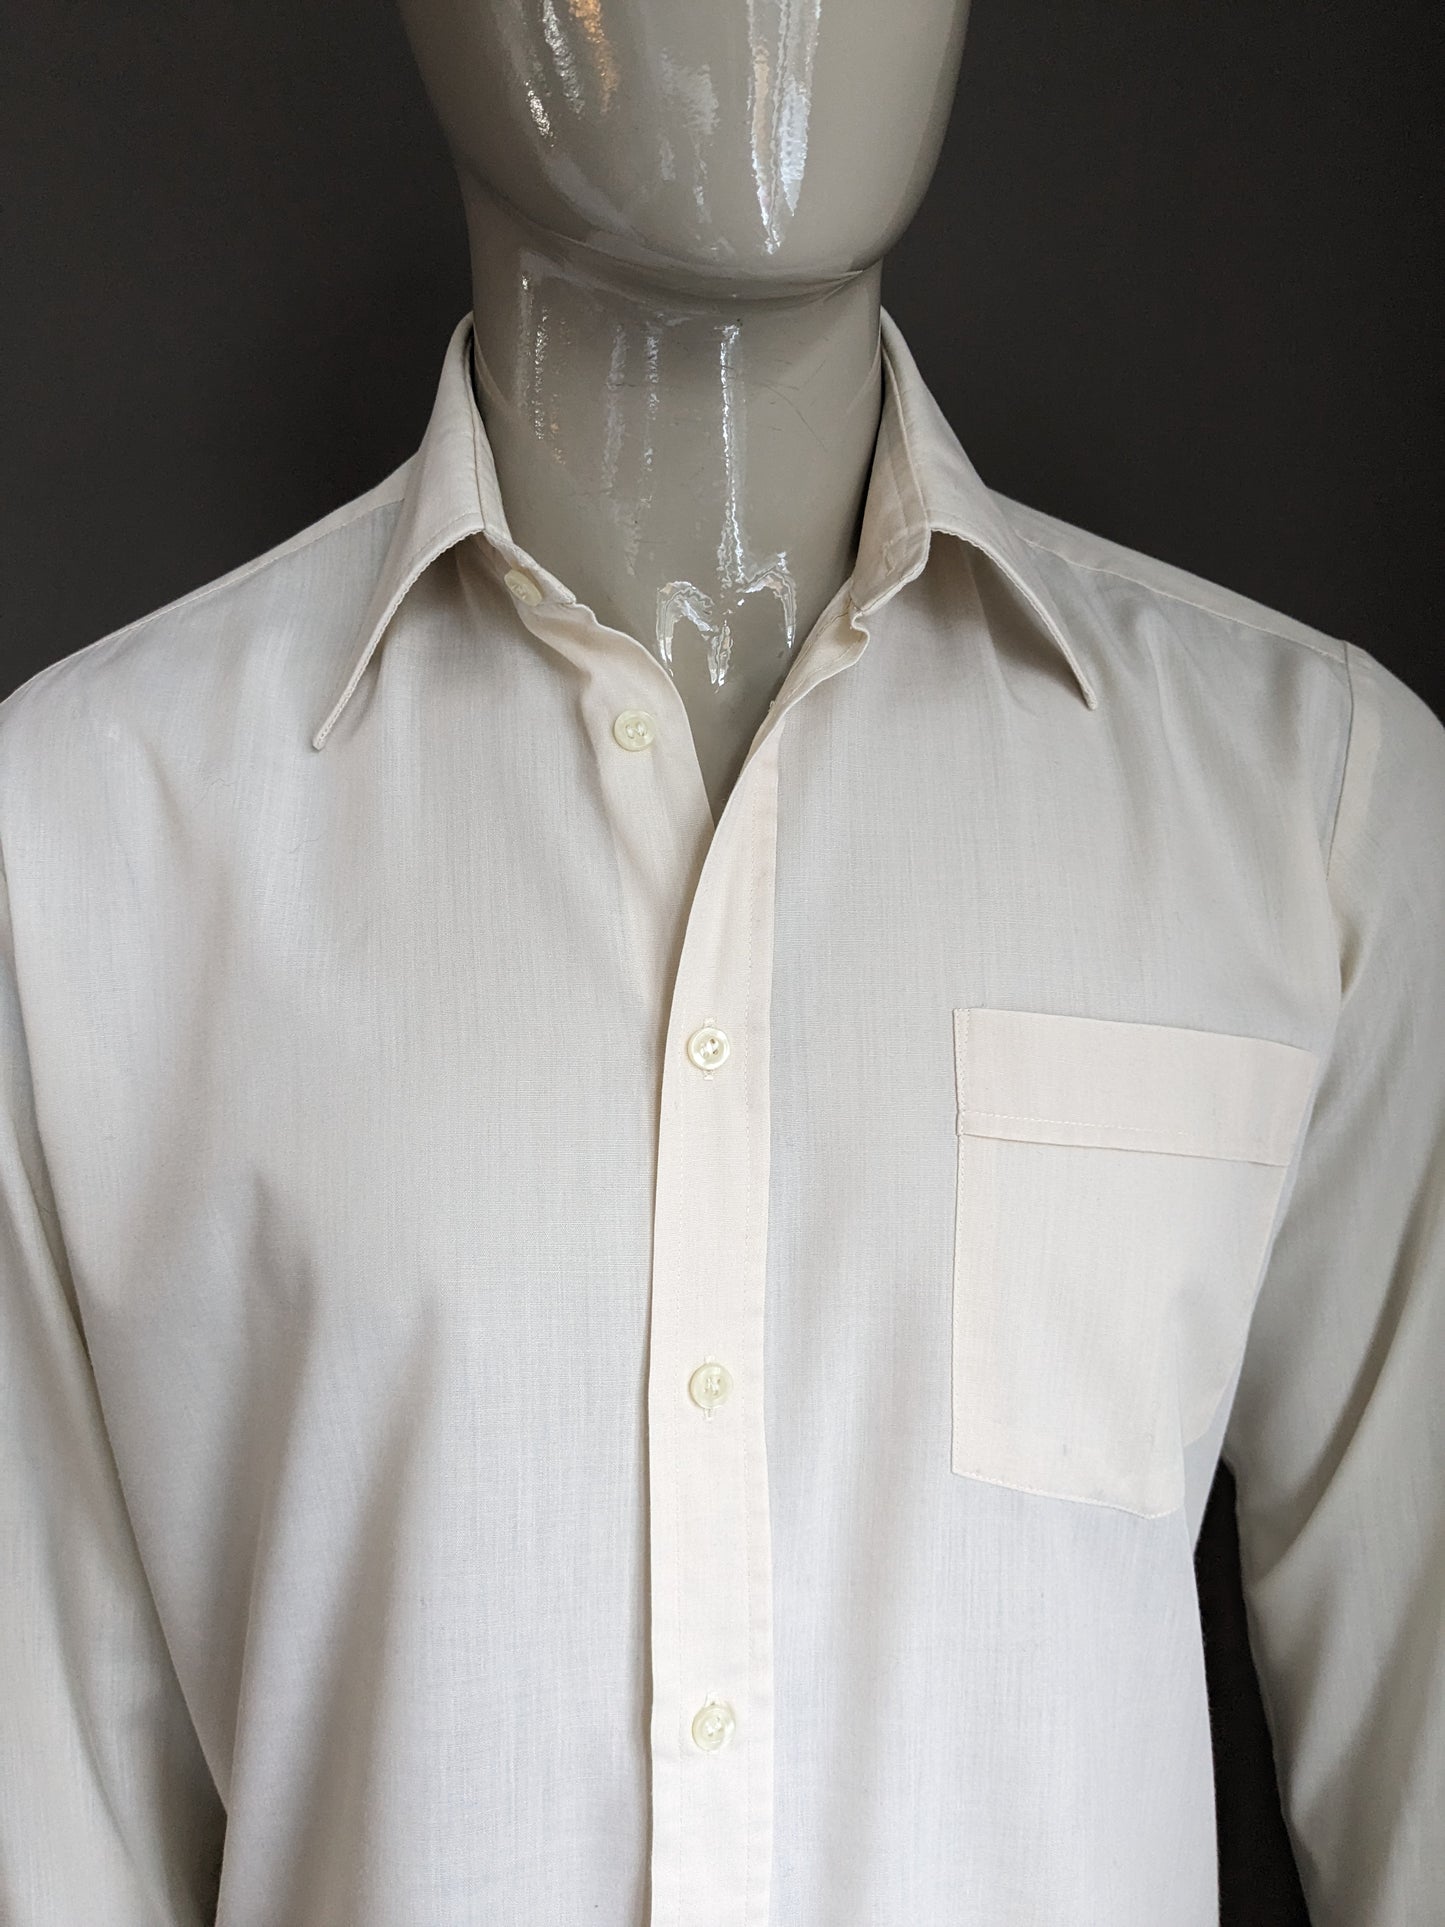 Chemise vintage des années 70 avec collier ponctuel. Coloré beige. Taille xl.